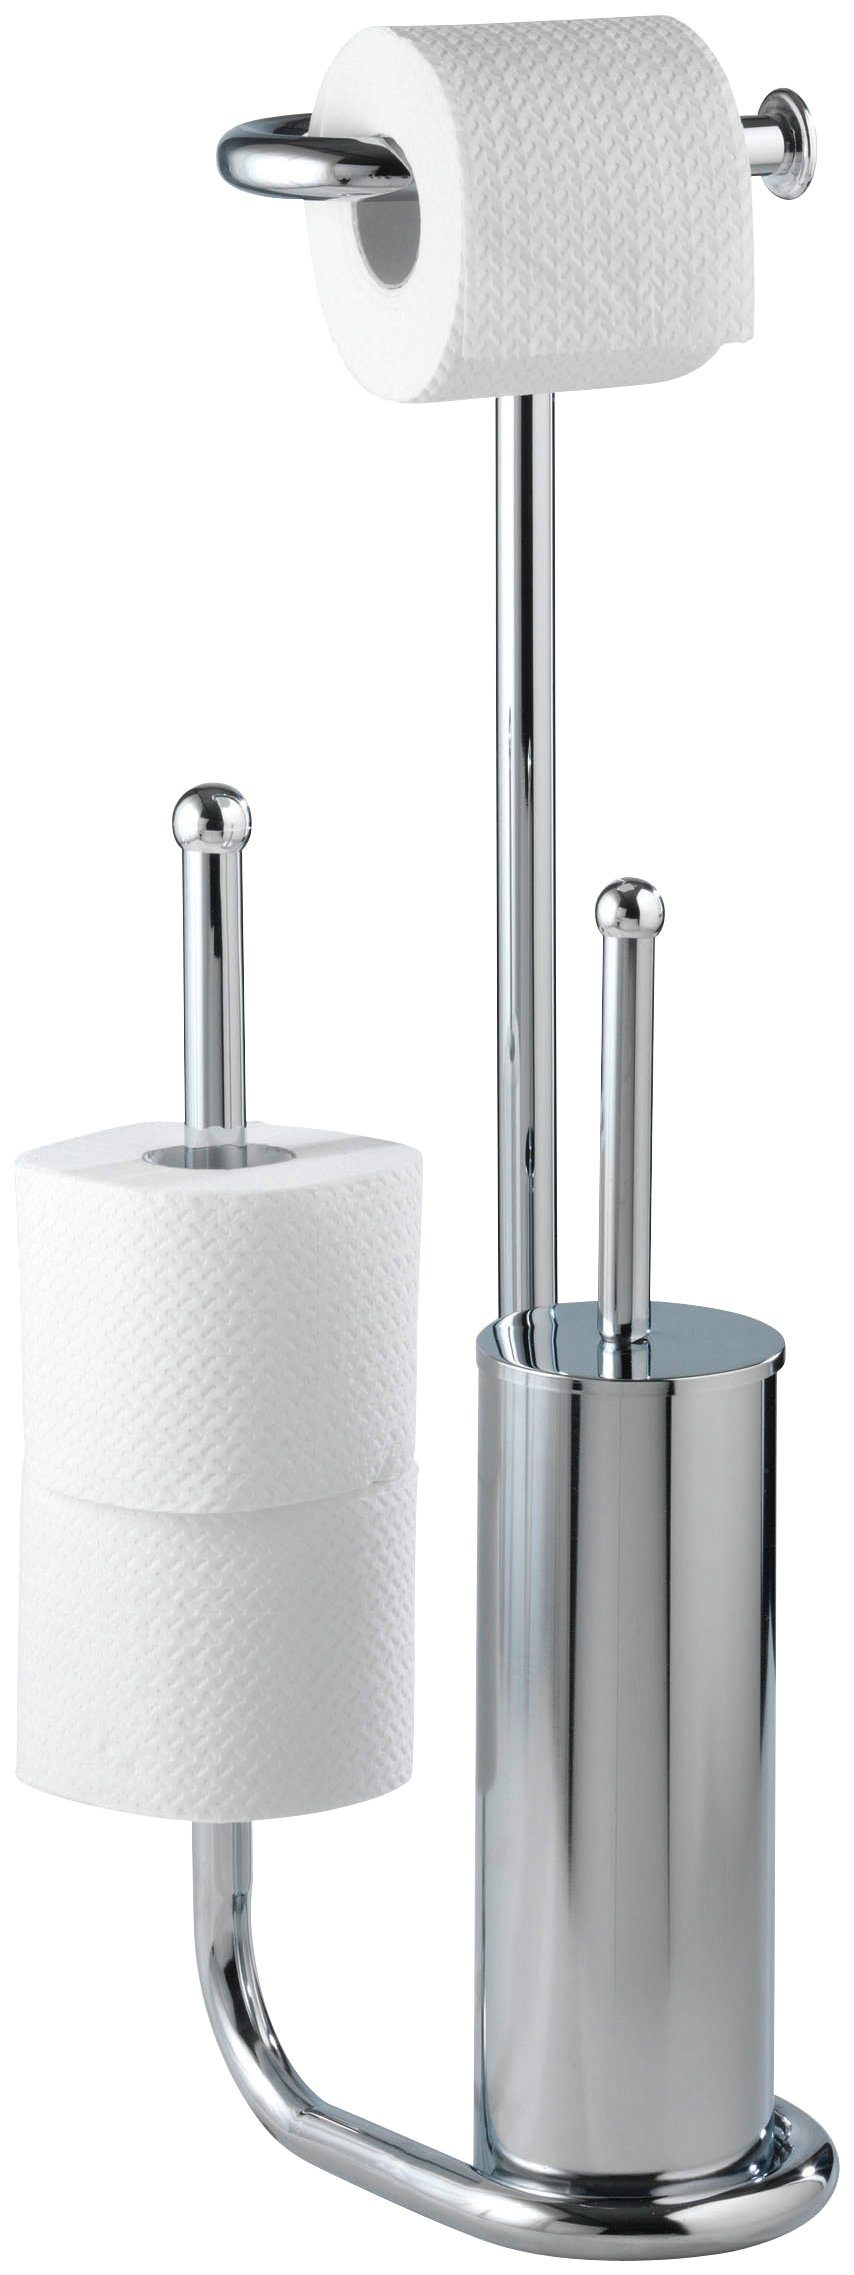 WENKO WC-Garnitur Universalo, integrierter Toilettenpapierhalter und WC-Bürstenhalter,  Setzt dekorative Akzente im Badezimmer